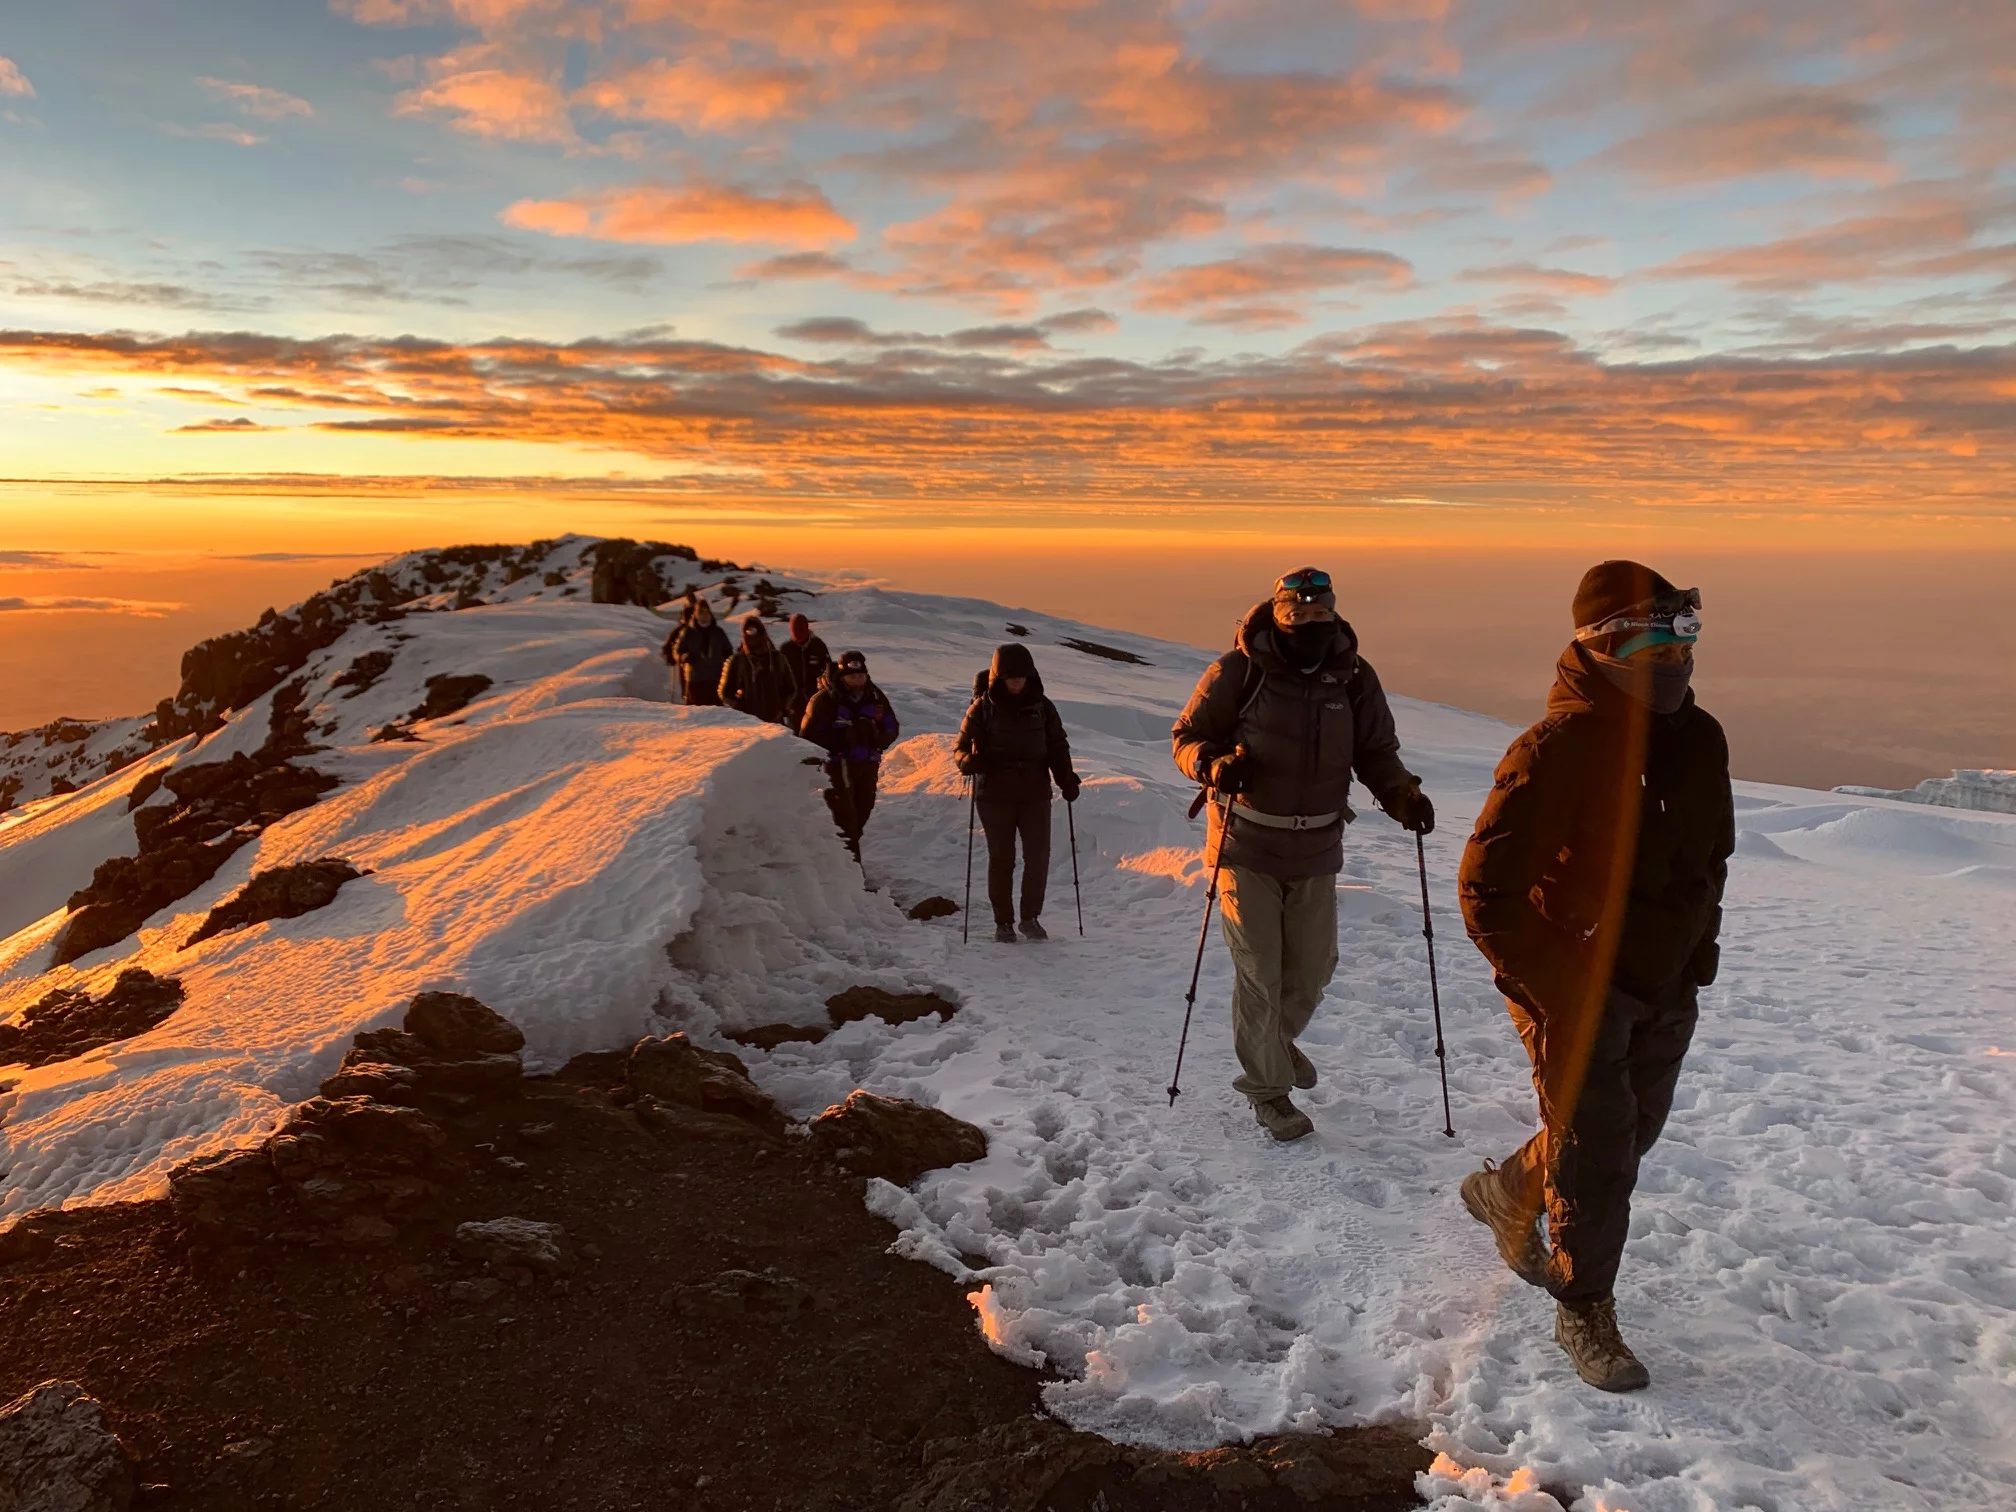 sladre lette fusion Mount Kilimanjaro - Climbing the Seven Summits